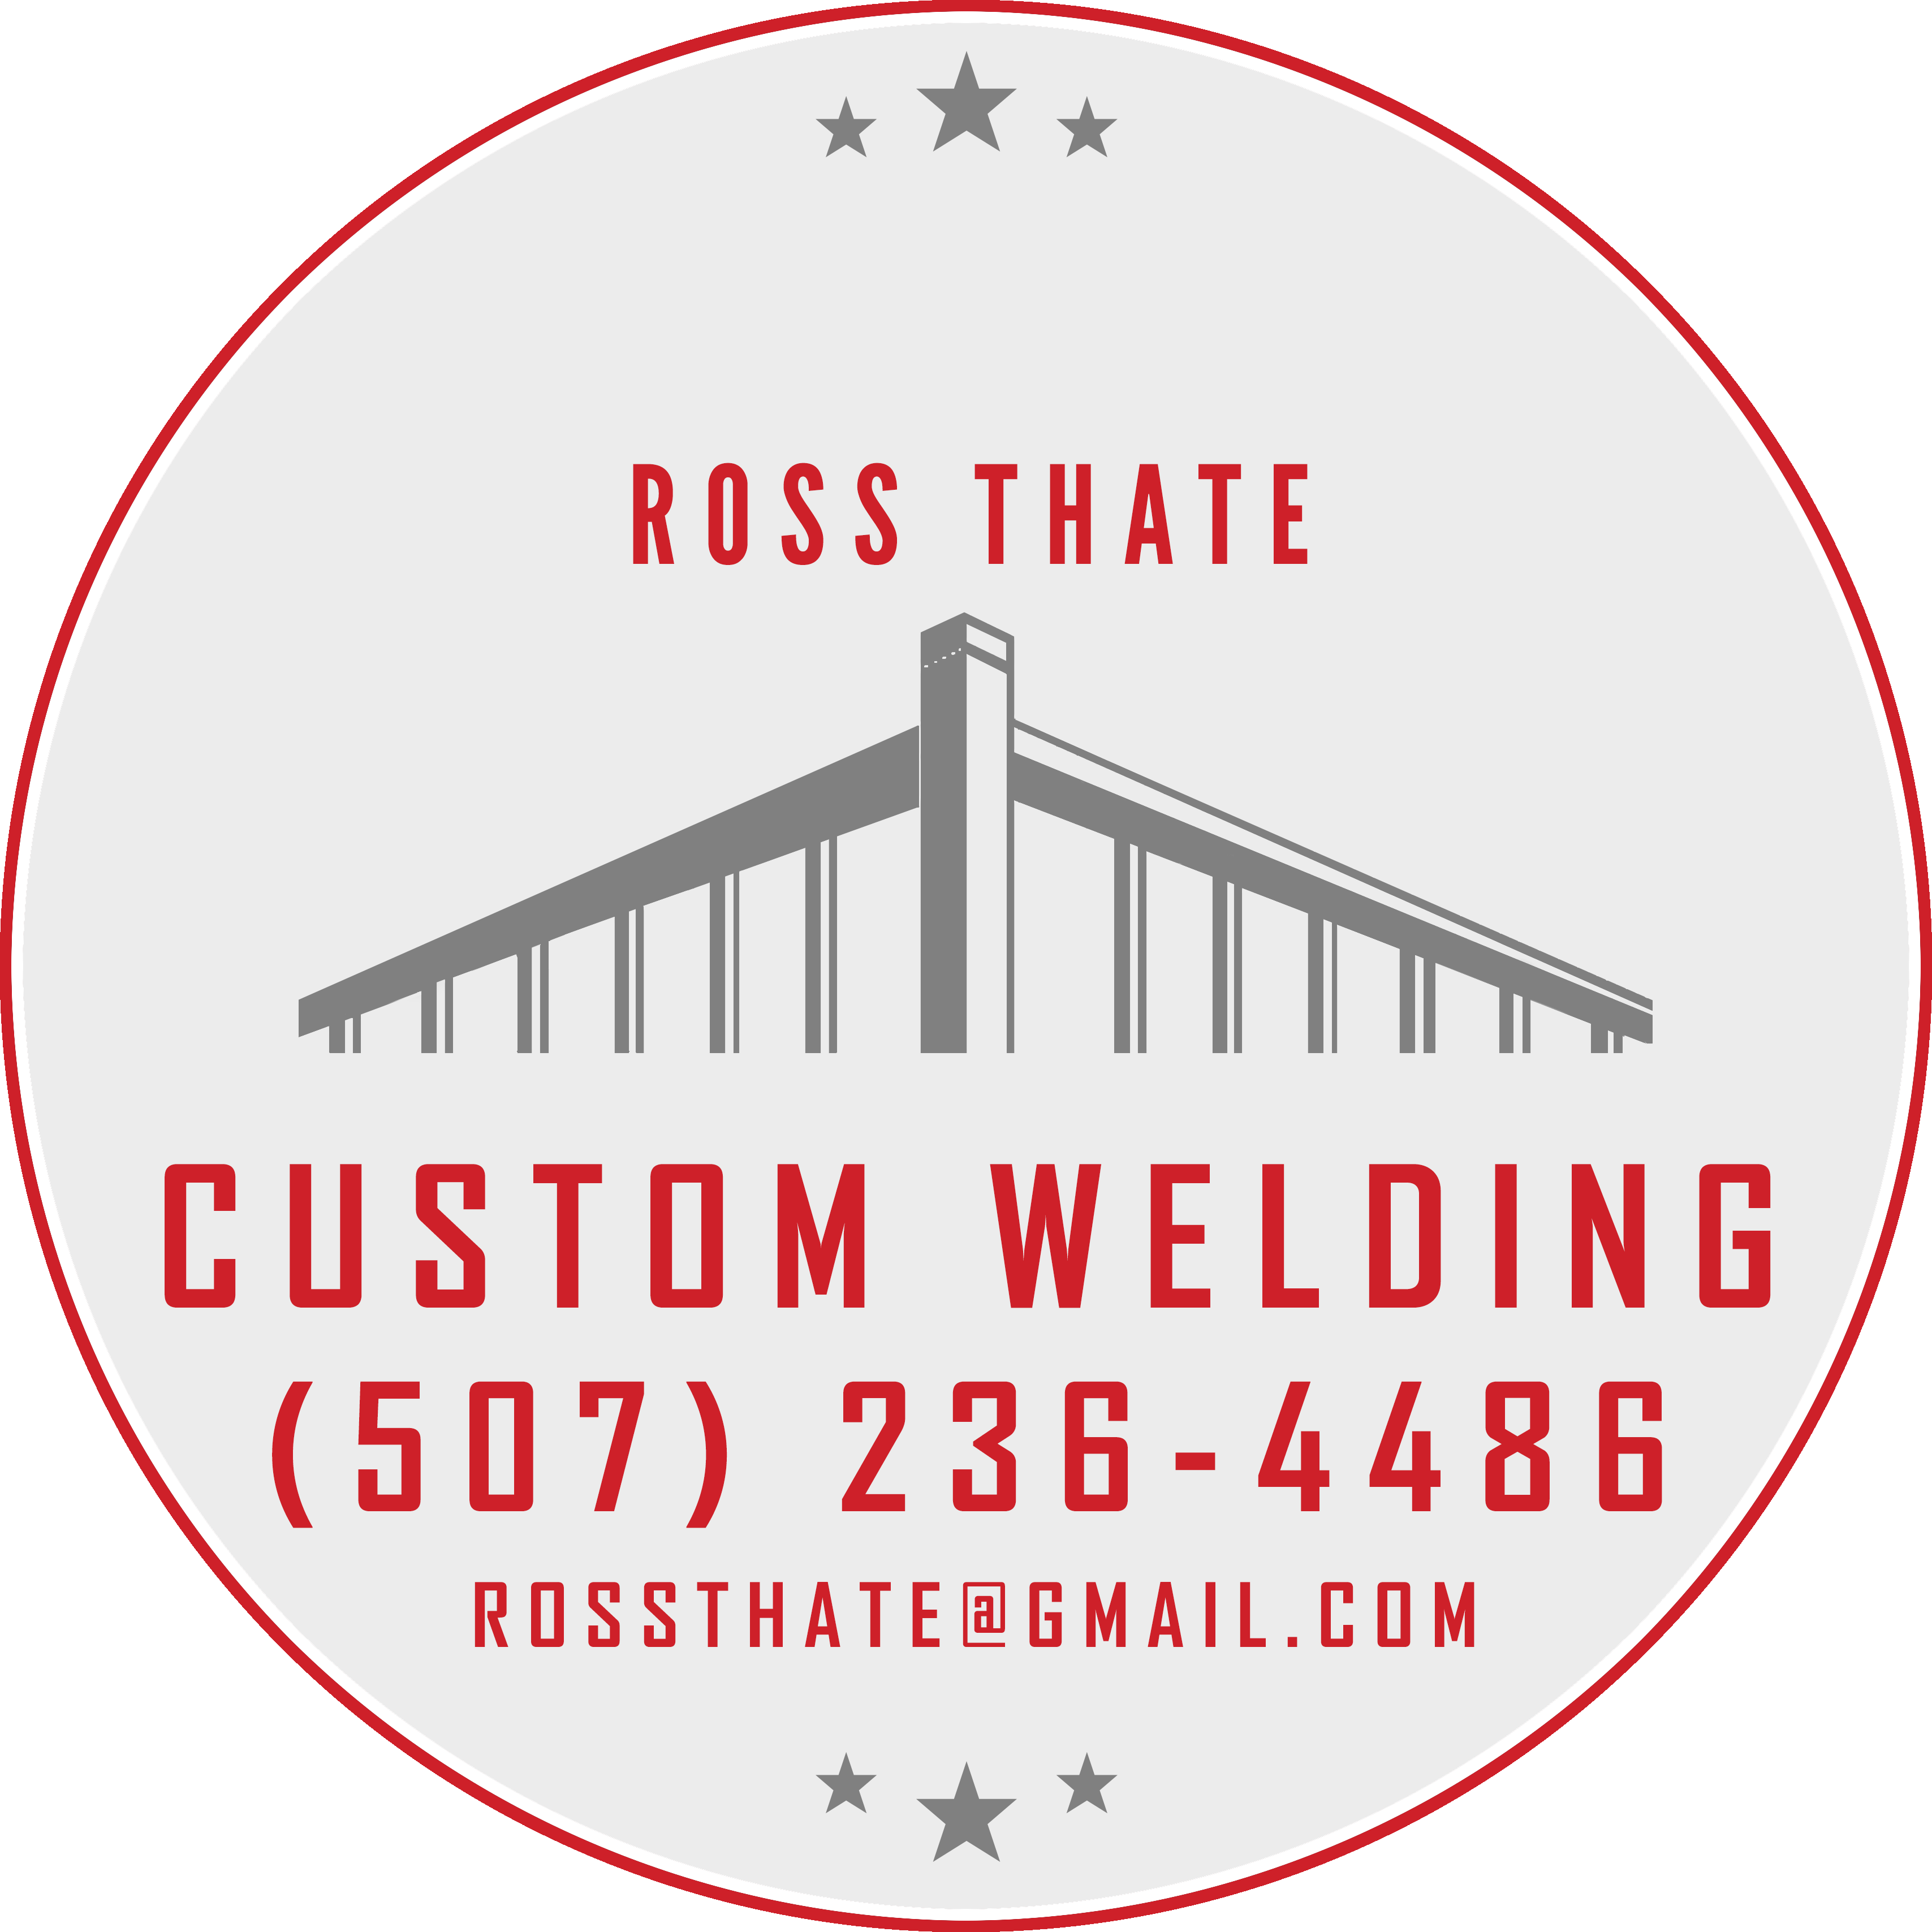 Ross Thate Custom Welding